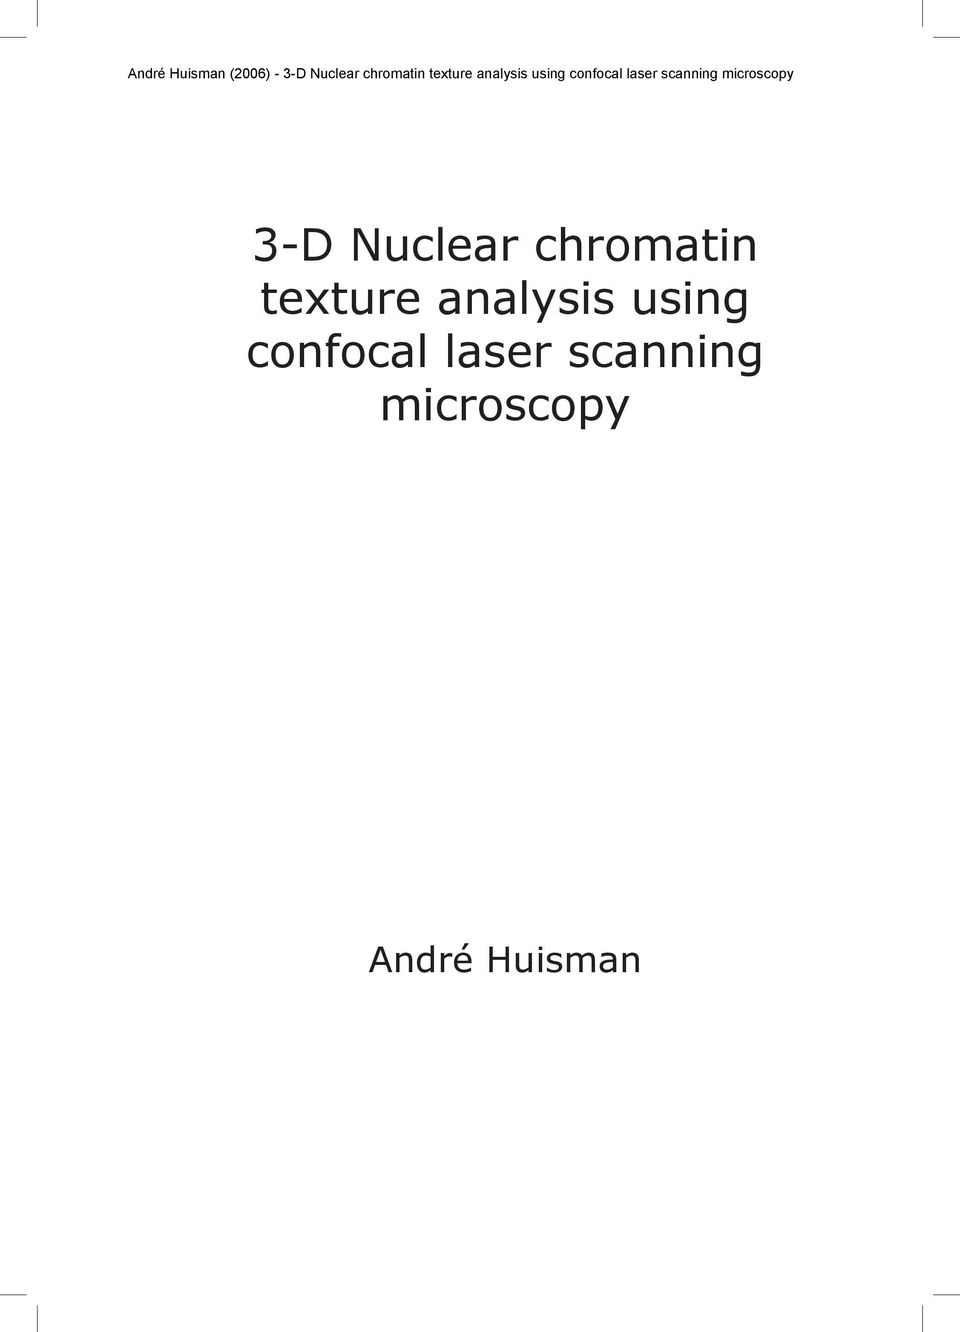 confocal laser scanning